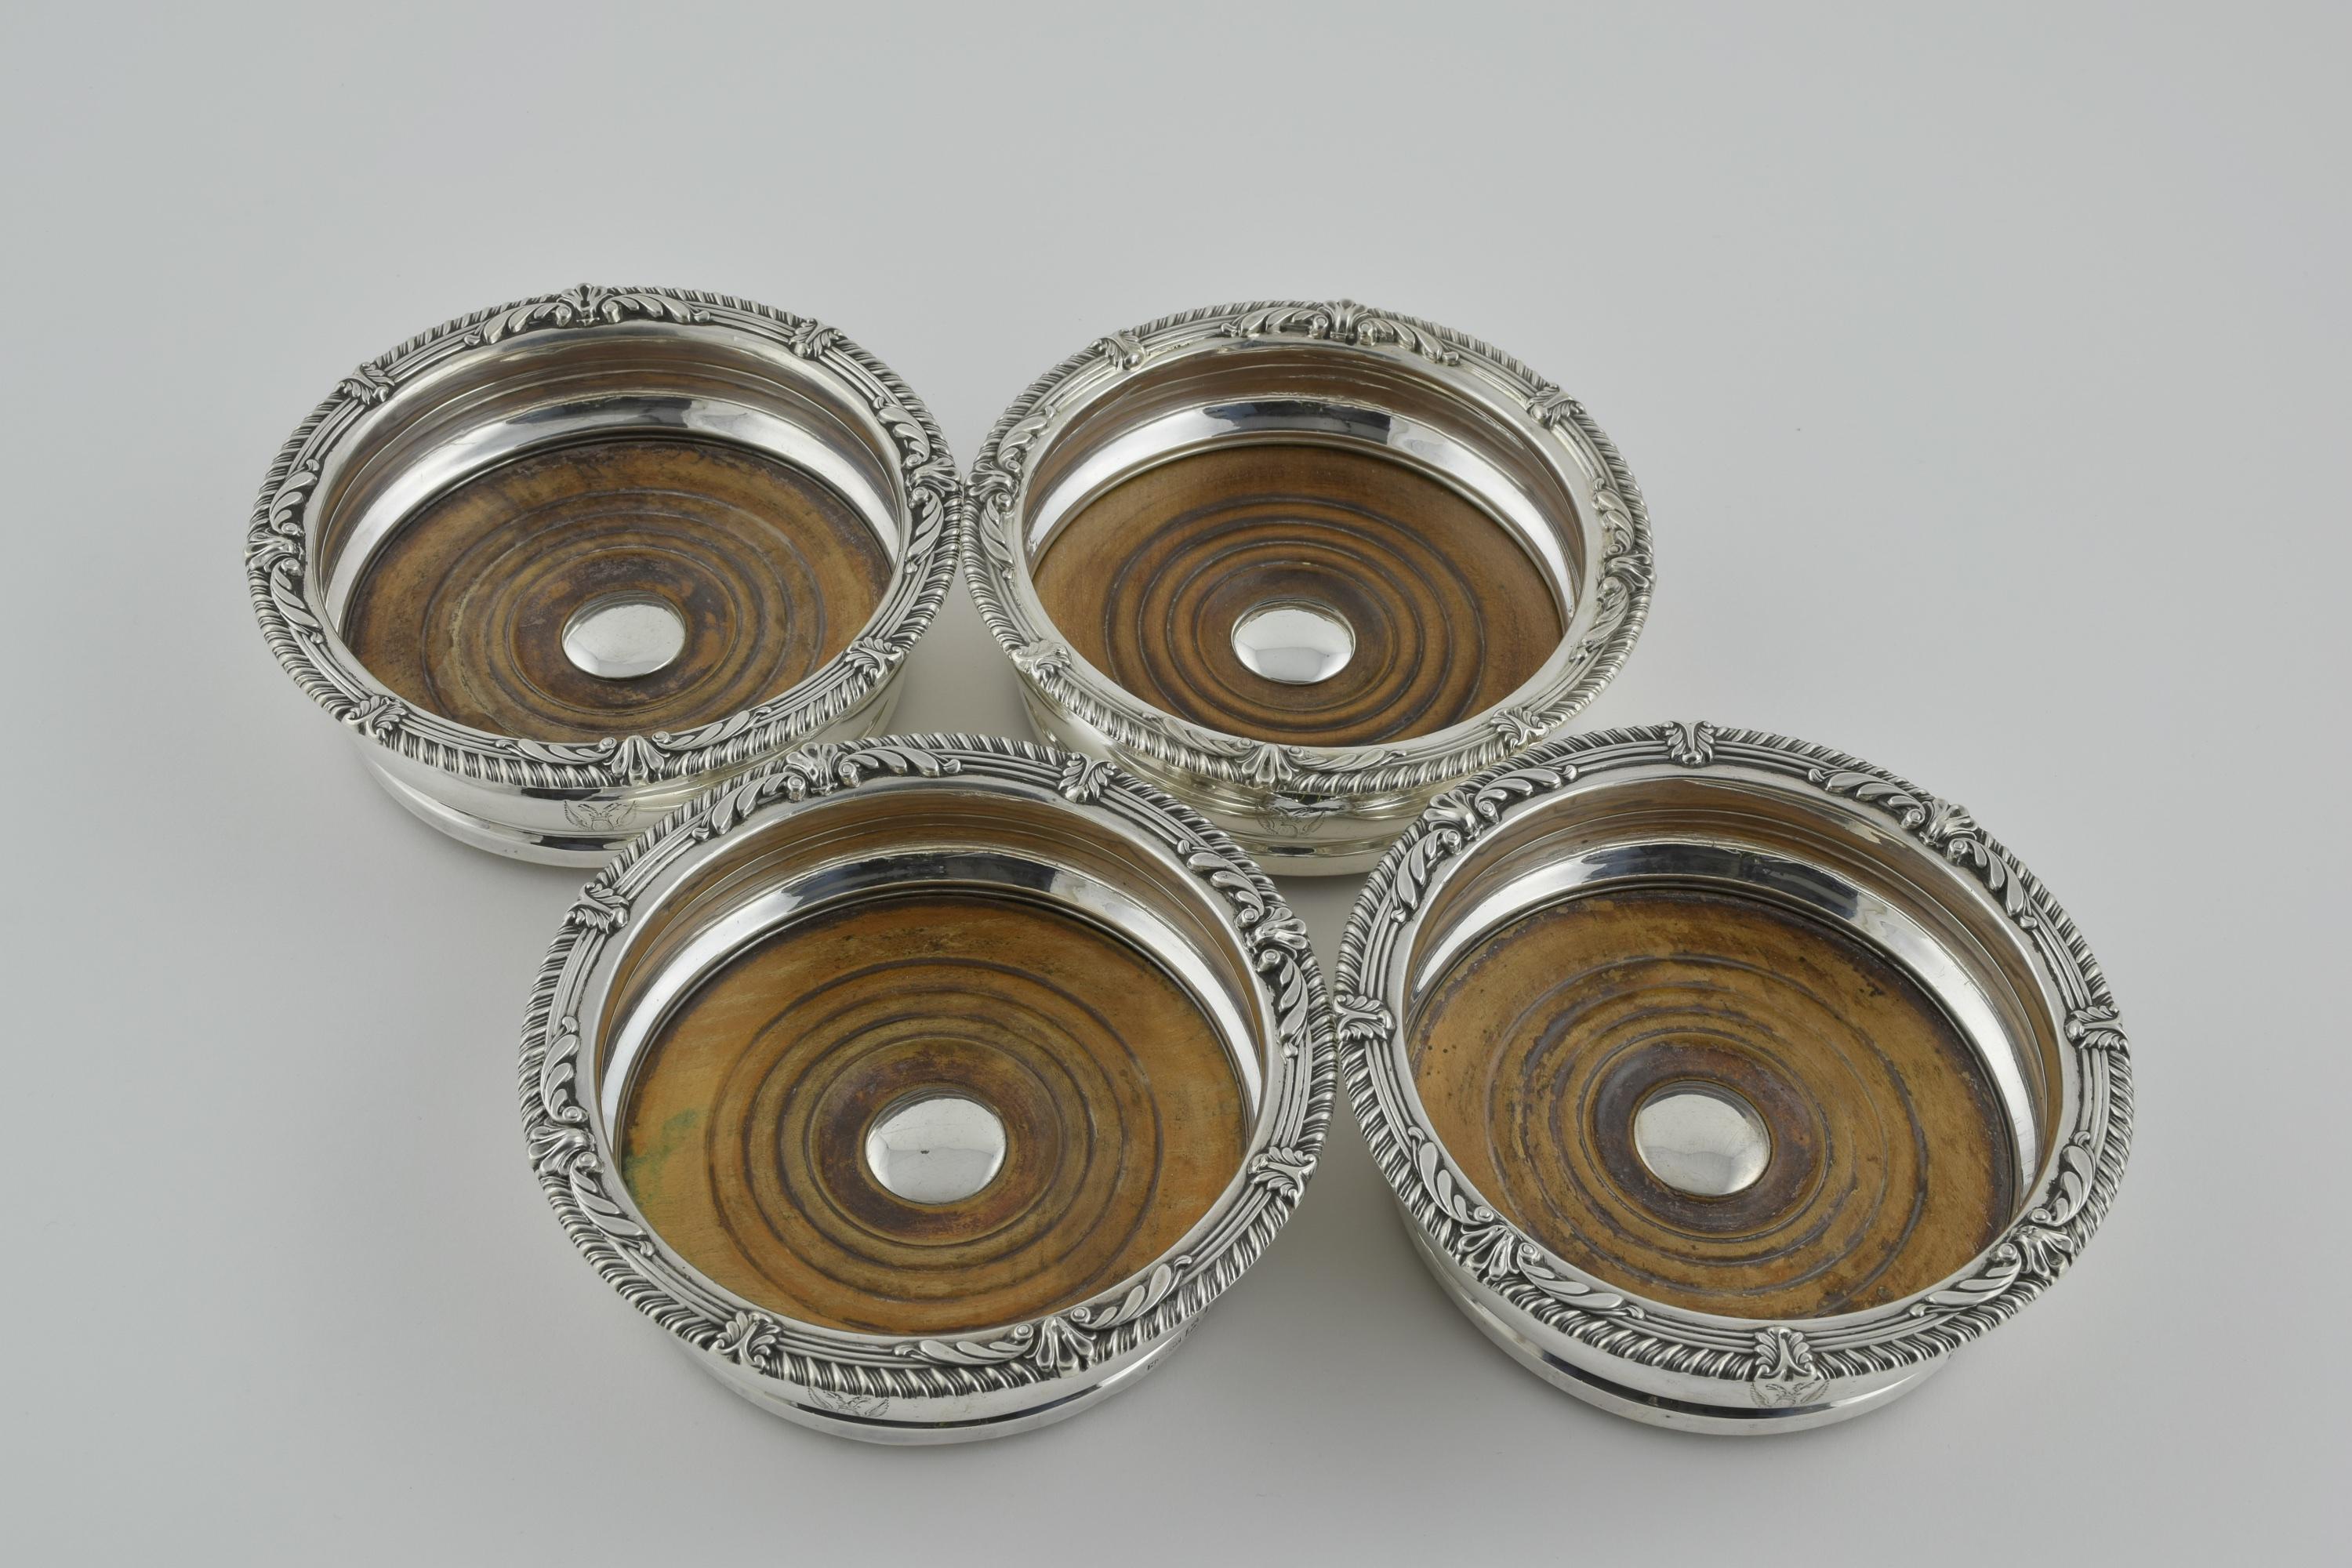 Poinçons de Mark Furniss and Co Sheffield, 1813. Forme traditionnelle avec des corps en argent uni, des bases en bois et des godrons traditionnels en coquille. 